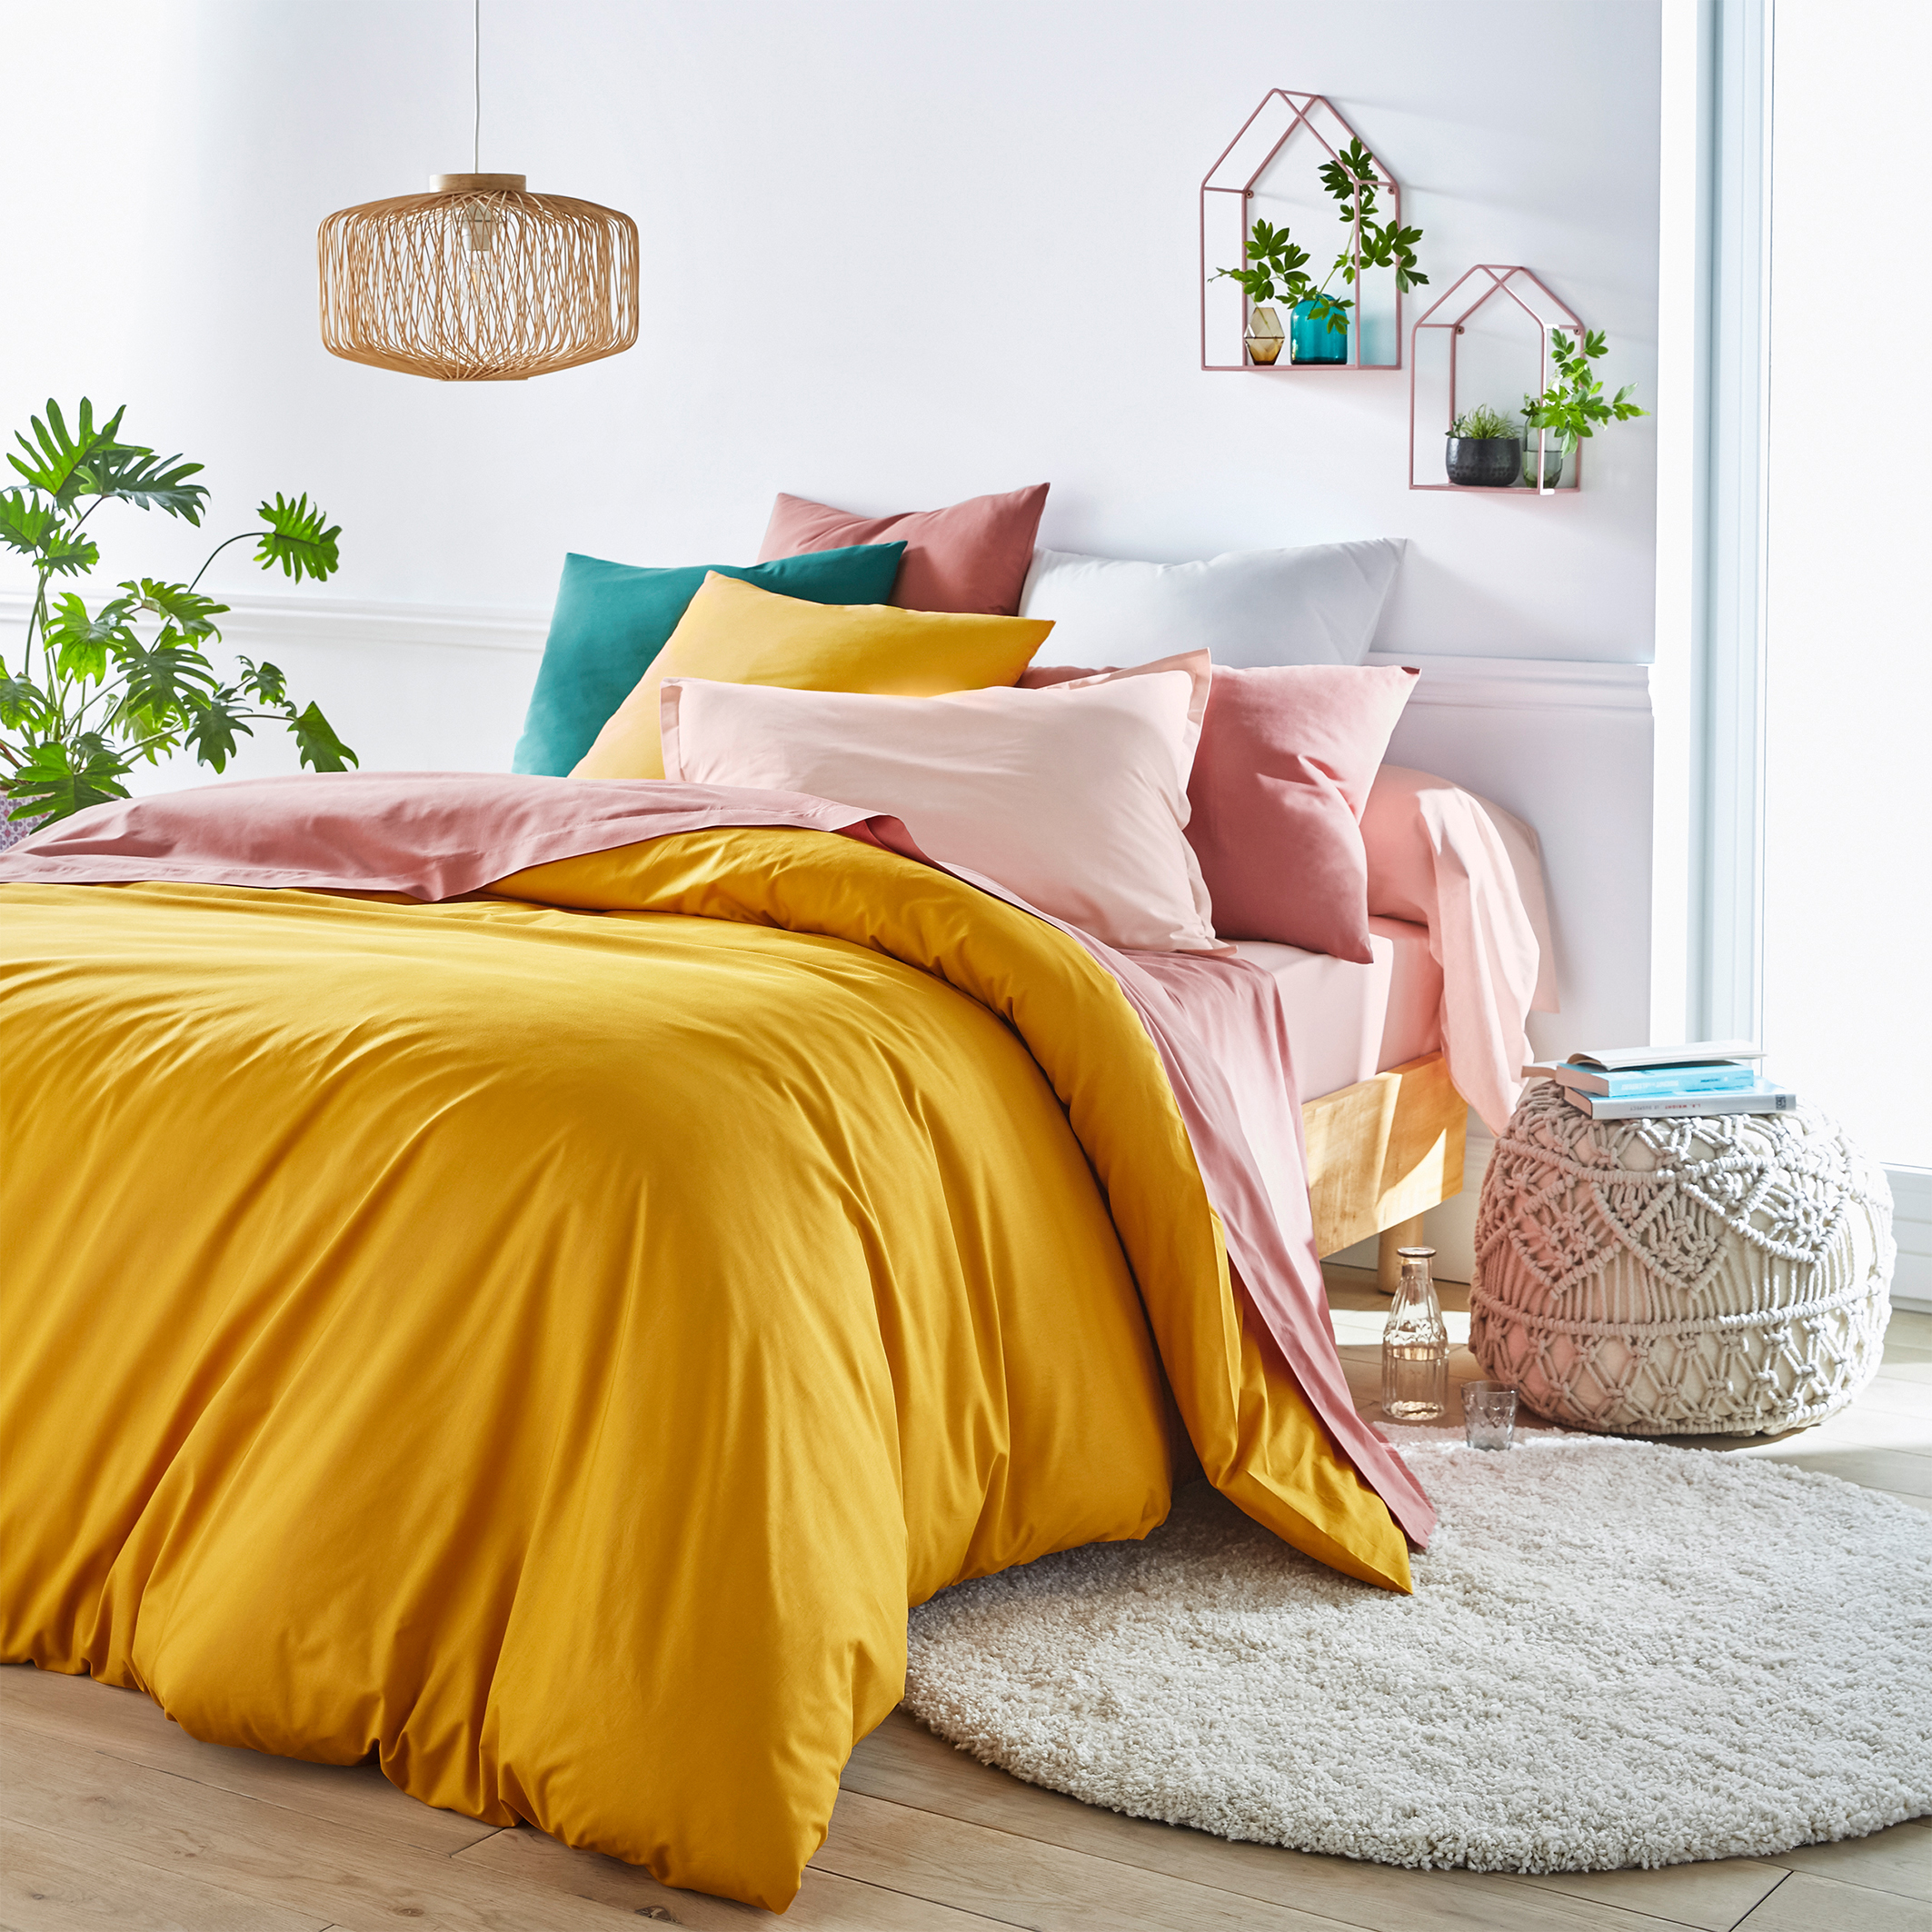 Спальня с желтым покрывалом